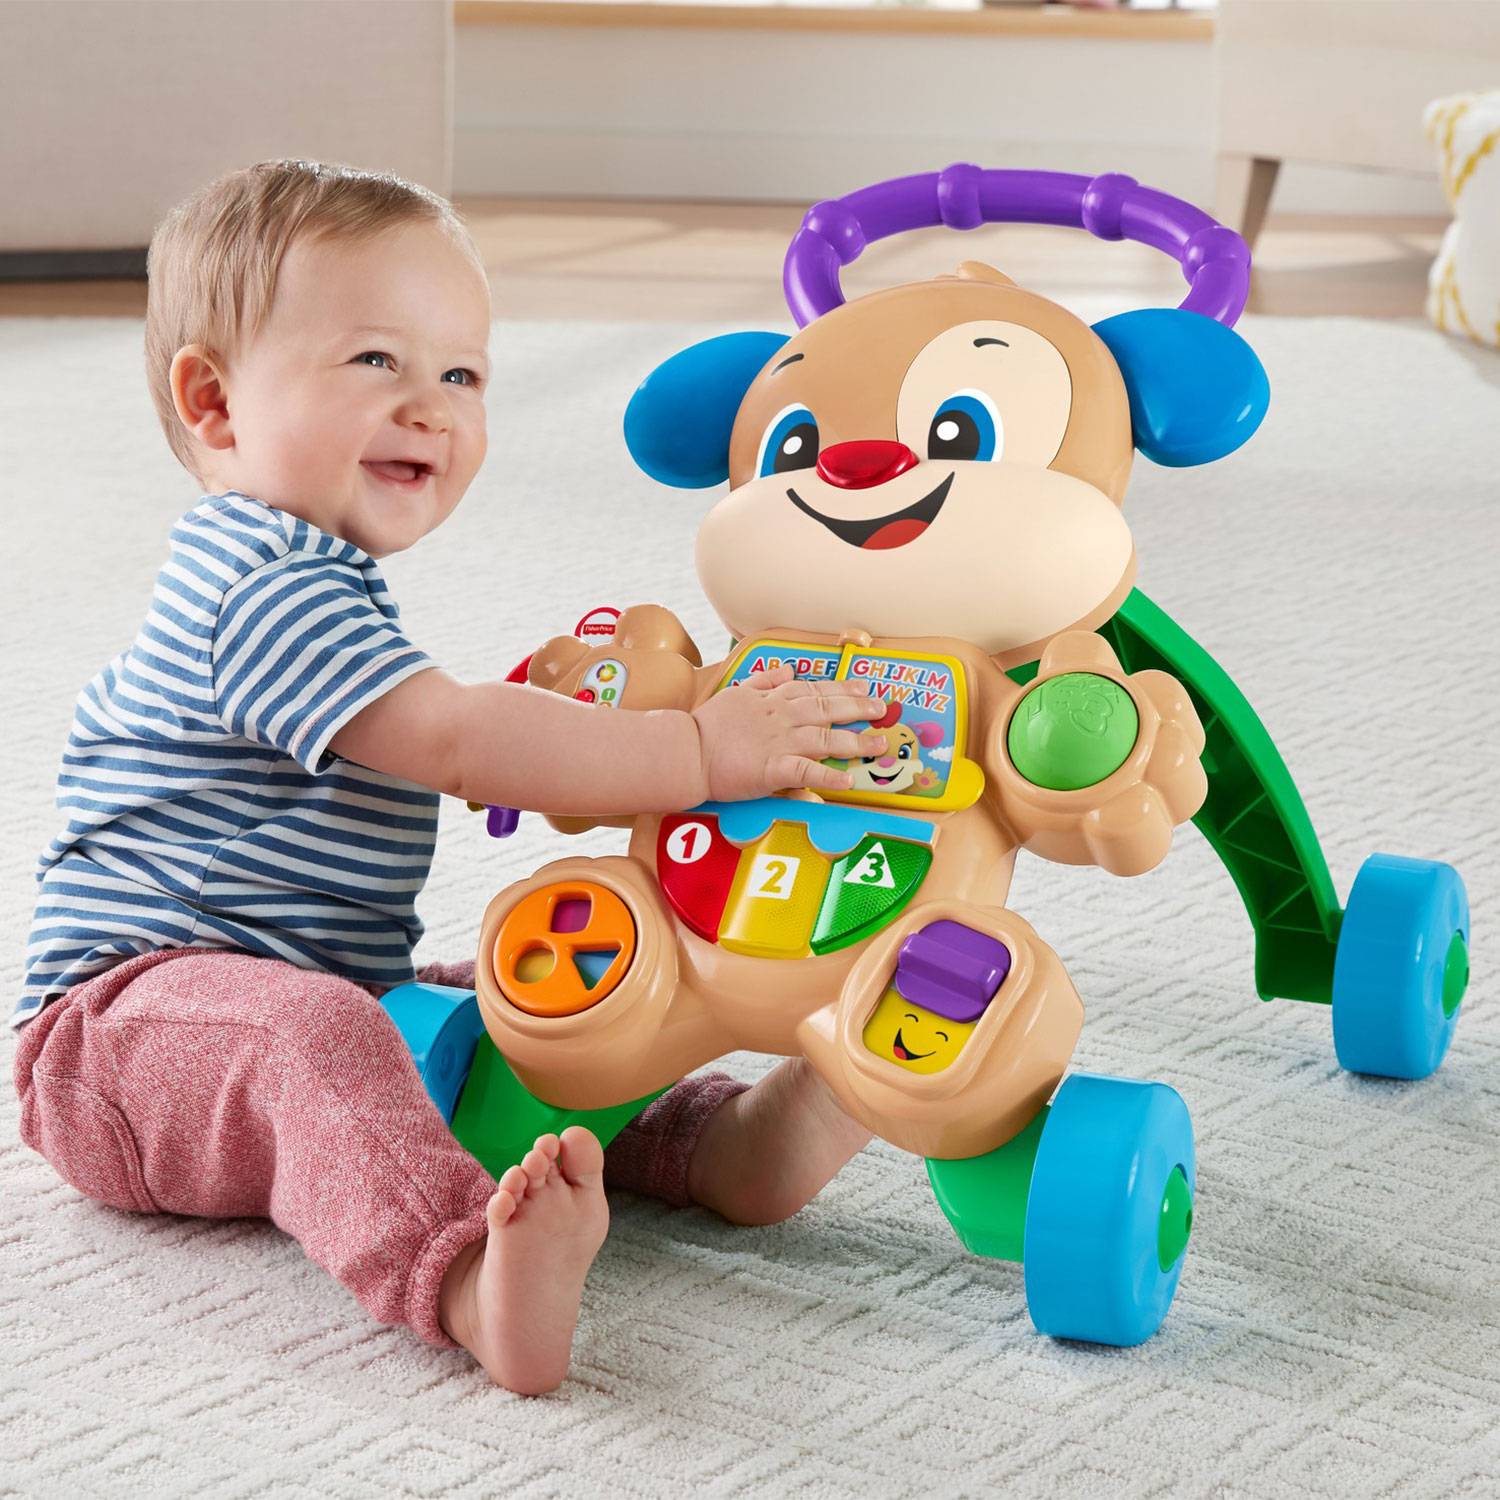 Qué juguete necesita un bebé de 6 meses